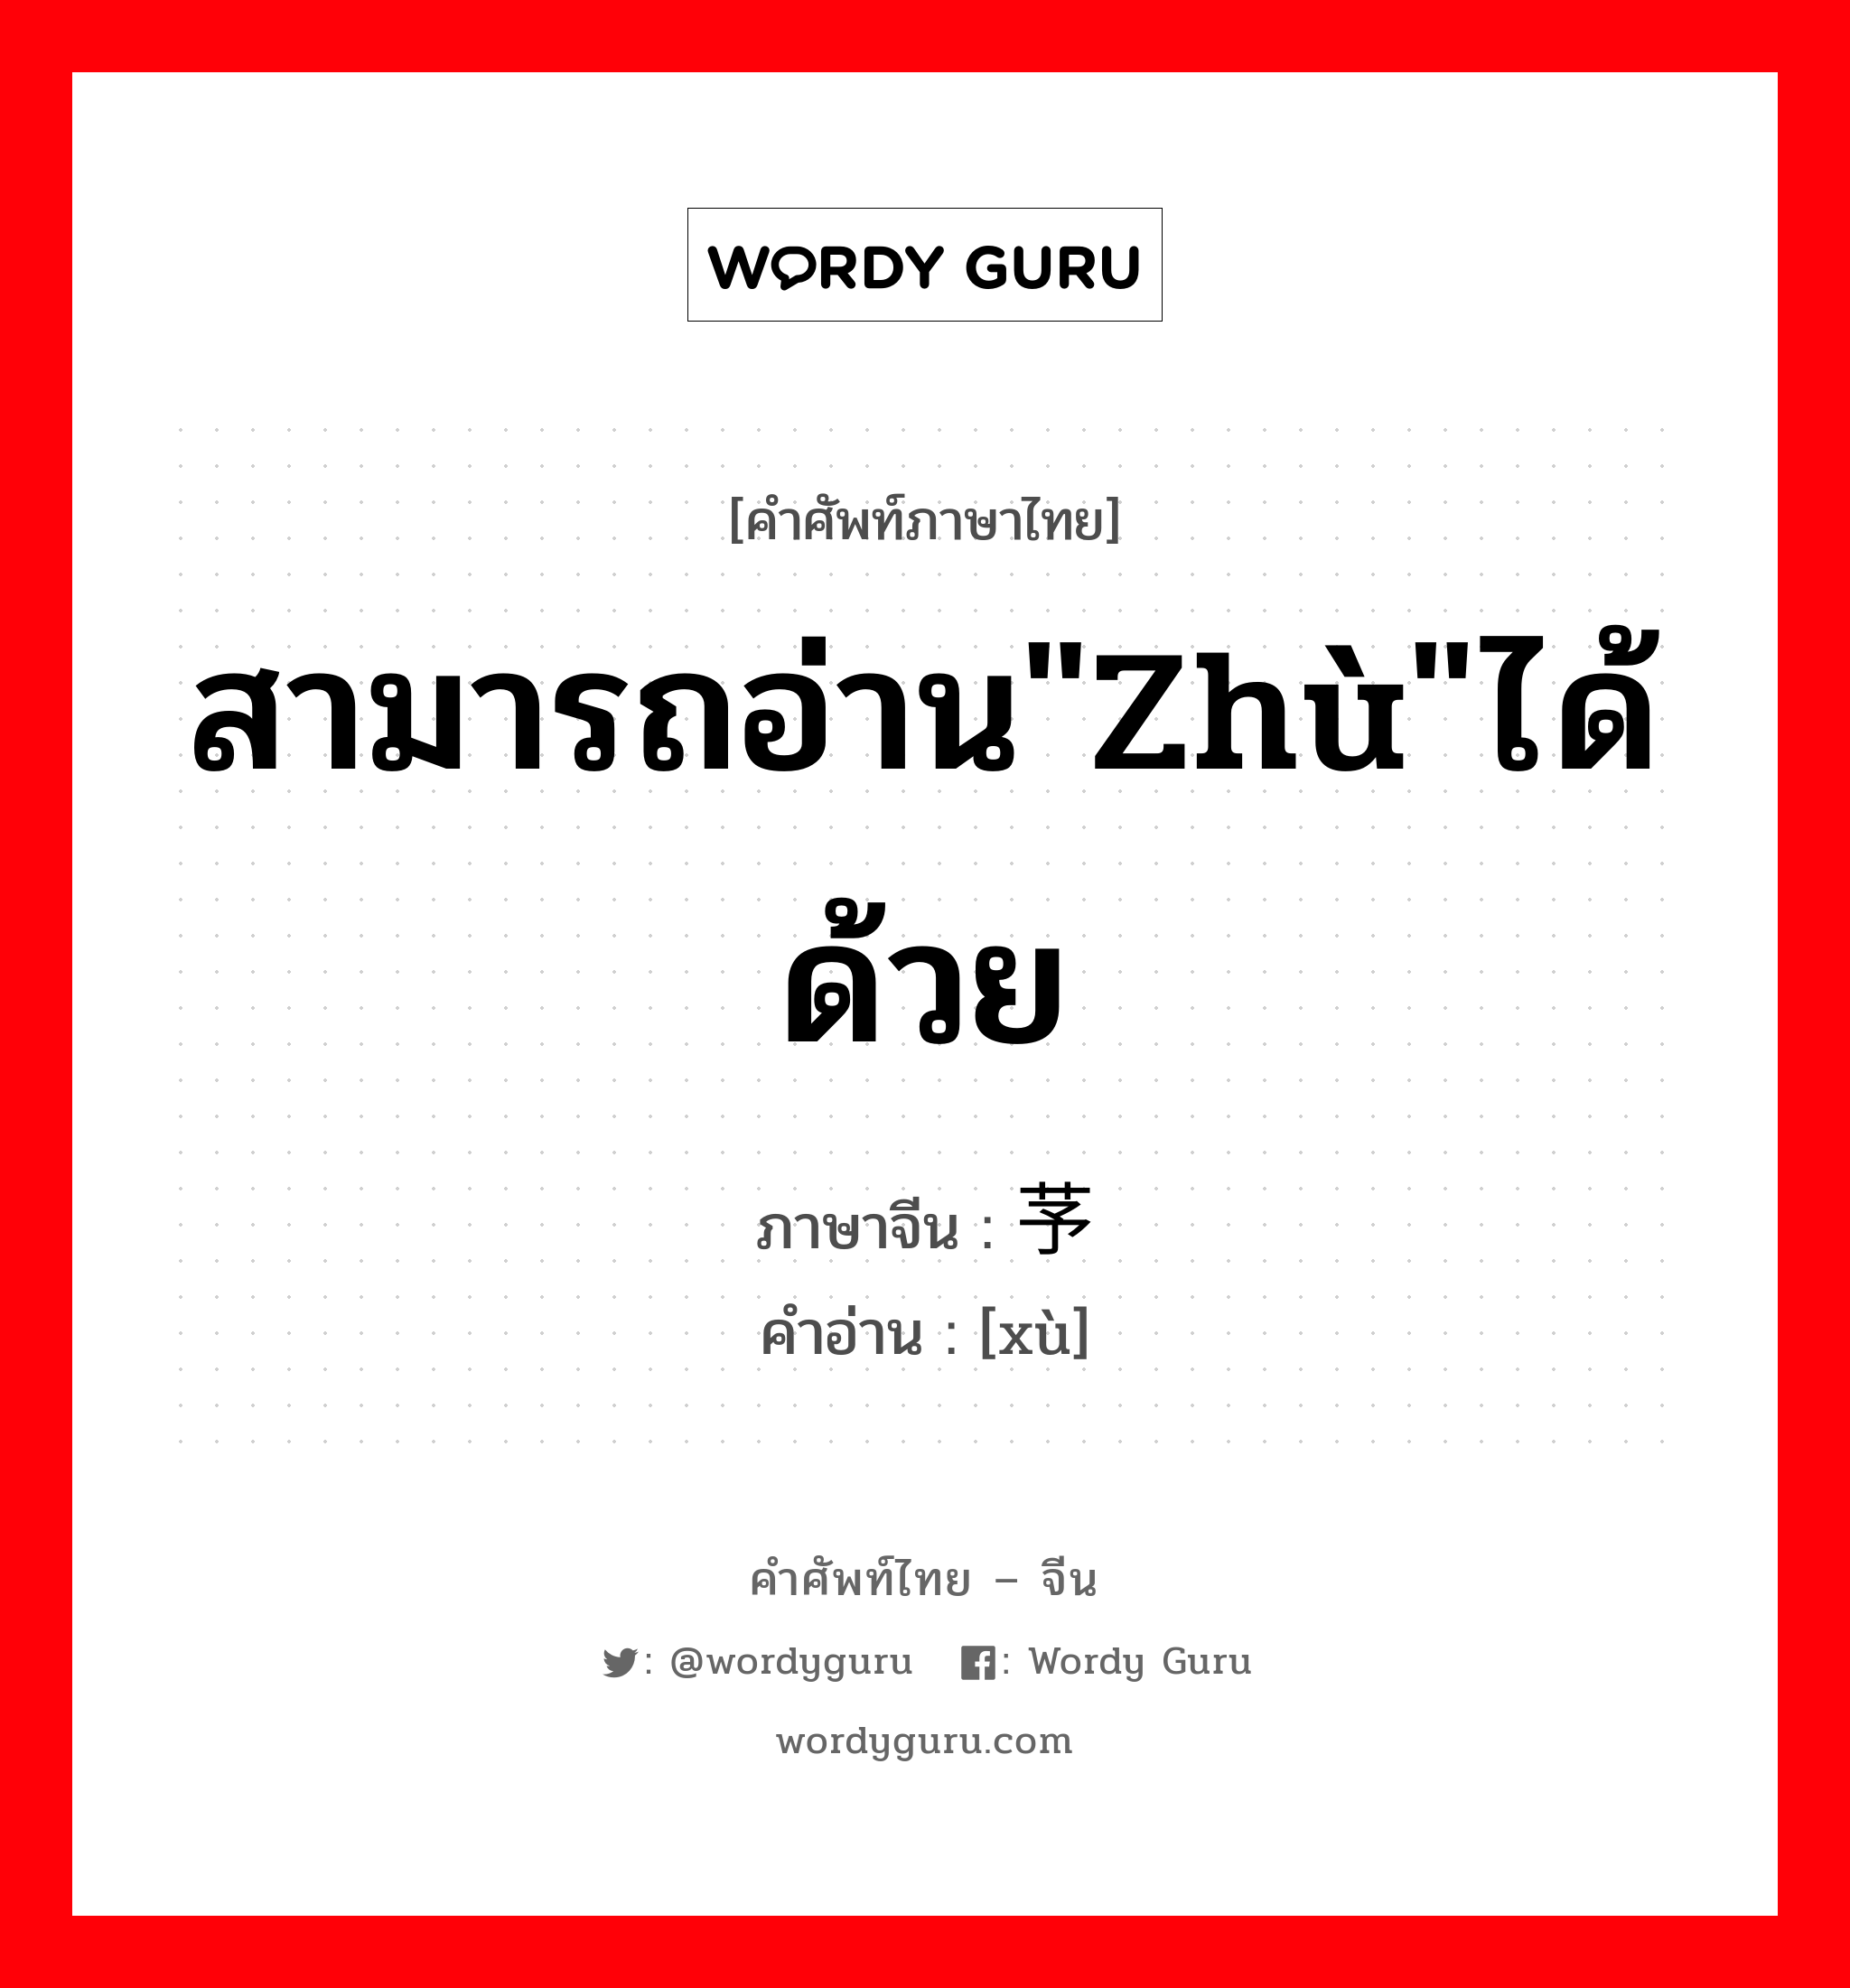 สามารถอ่าน"zhù"ได้ด้วย ภาษาจีนคืออะไร, คำศัพท์ภาษาไทย - จีน สามารถอ่าน"zhù"ได้ด้วย ภาษาจีน 芧 คำอ่าน [xù]